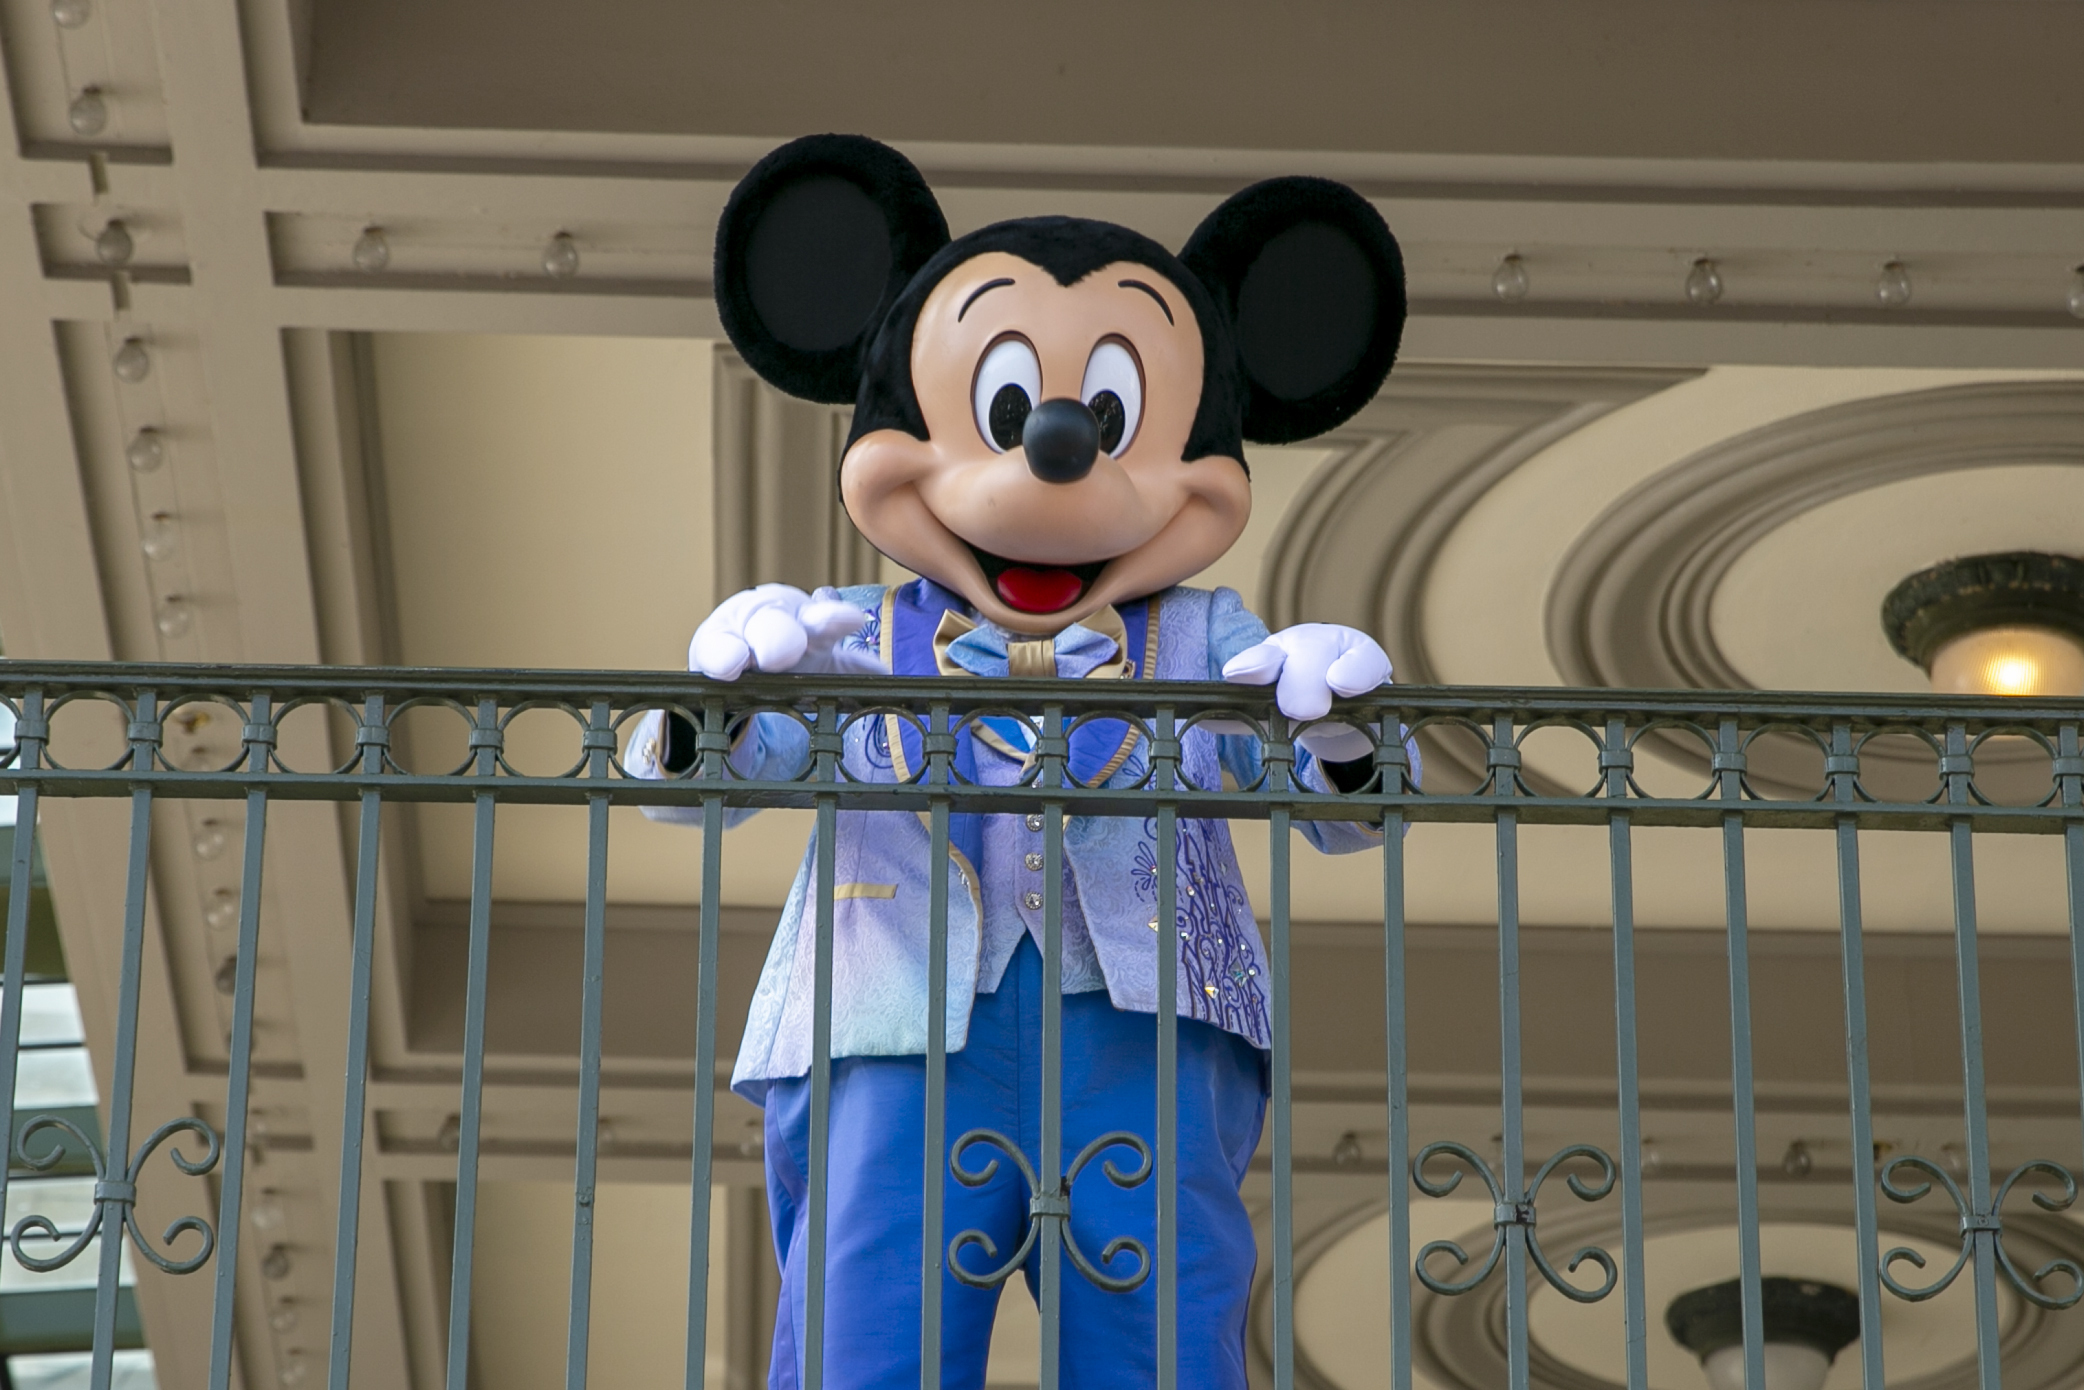 Mickey Mouse e outros personagens que vão cair em domínio público em 2024